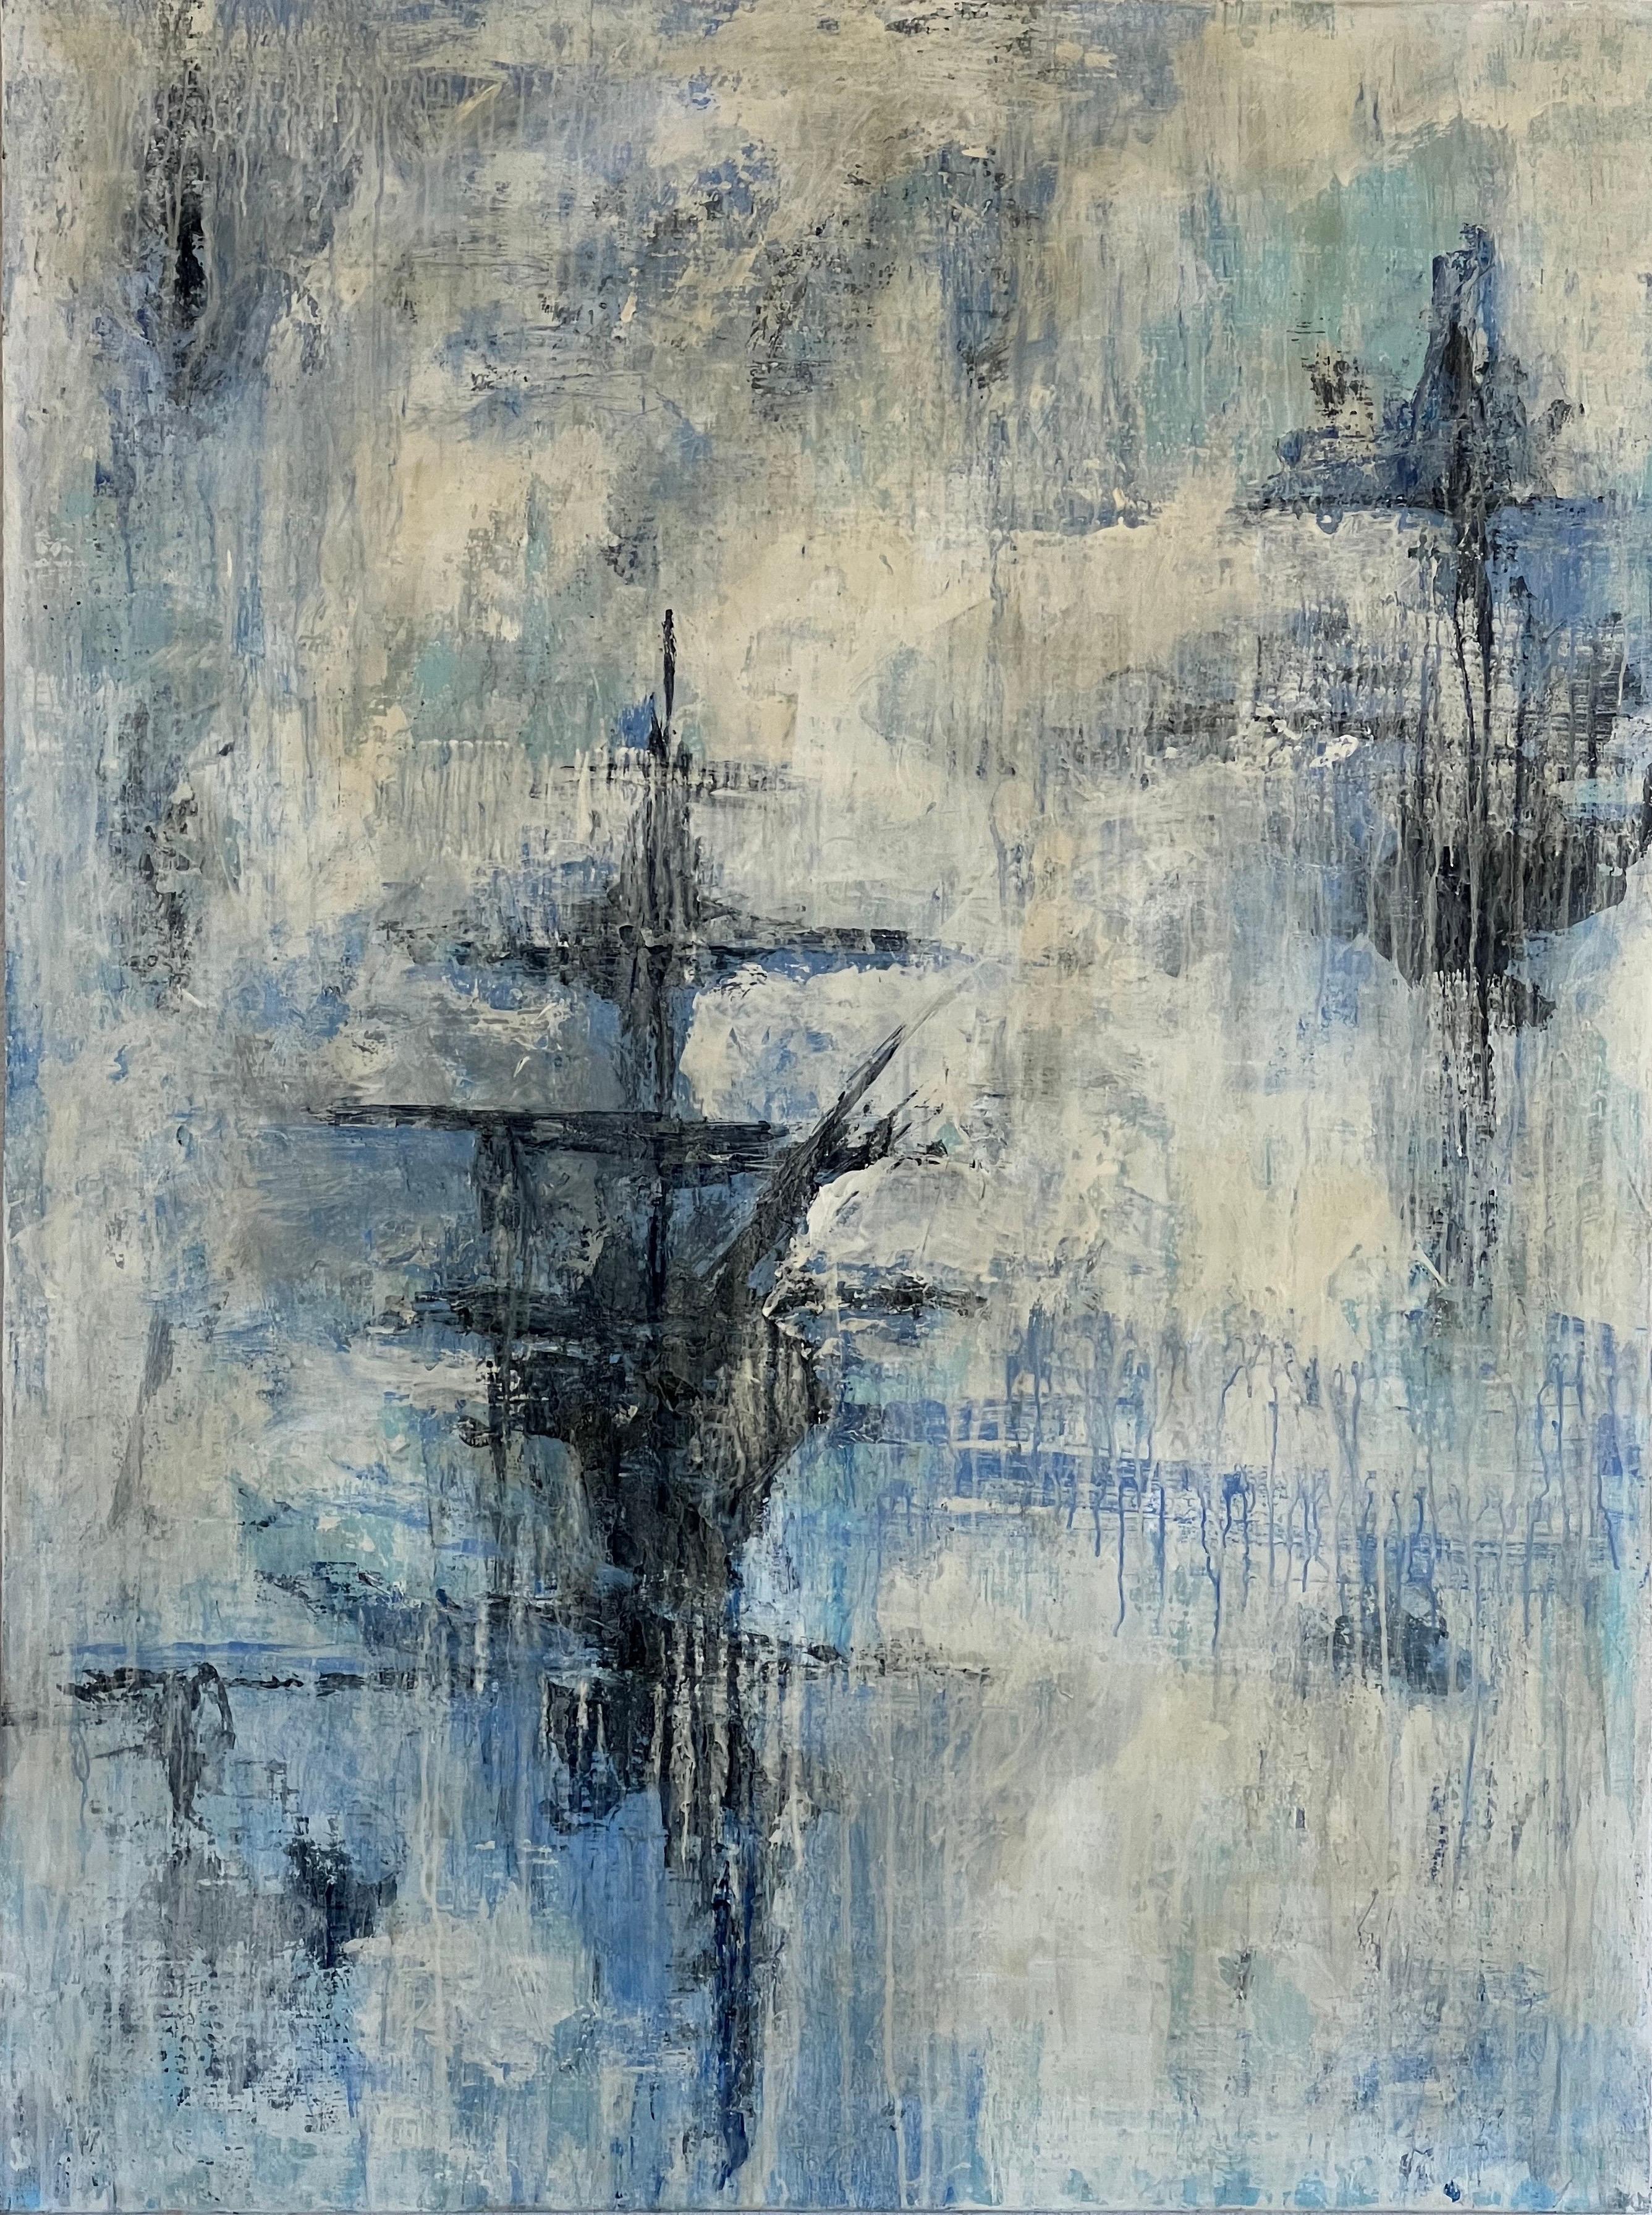 Landscape Painting Stephanie Cate - Ship Ghost, Acrylique, paysage abstrait, bleu, blanc, eau, bateau